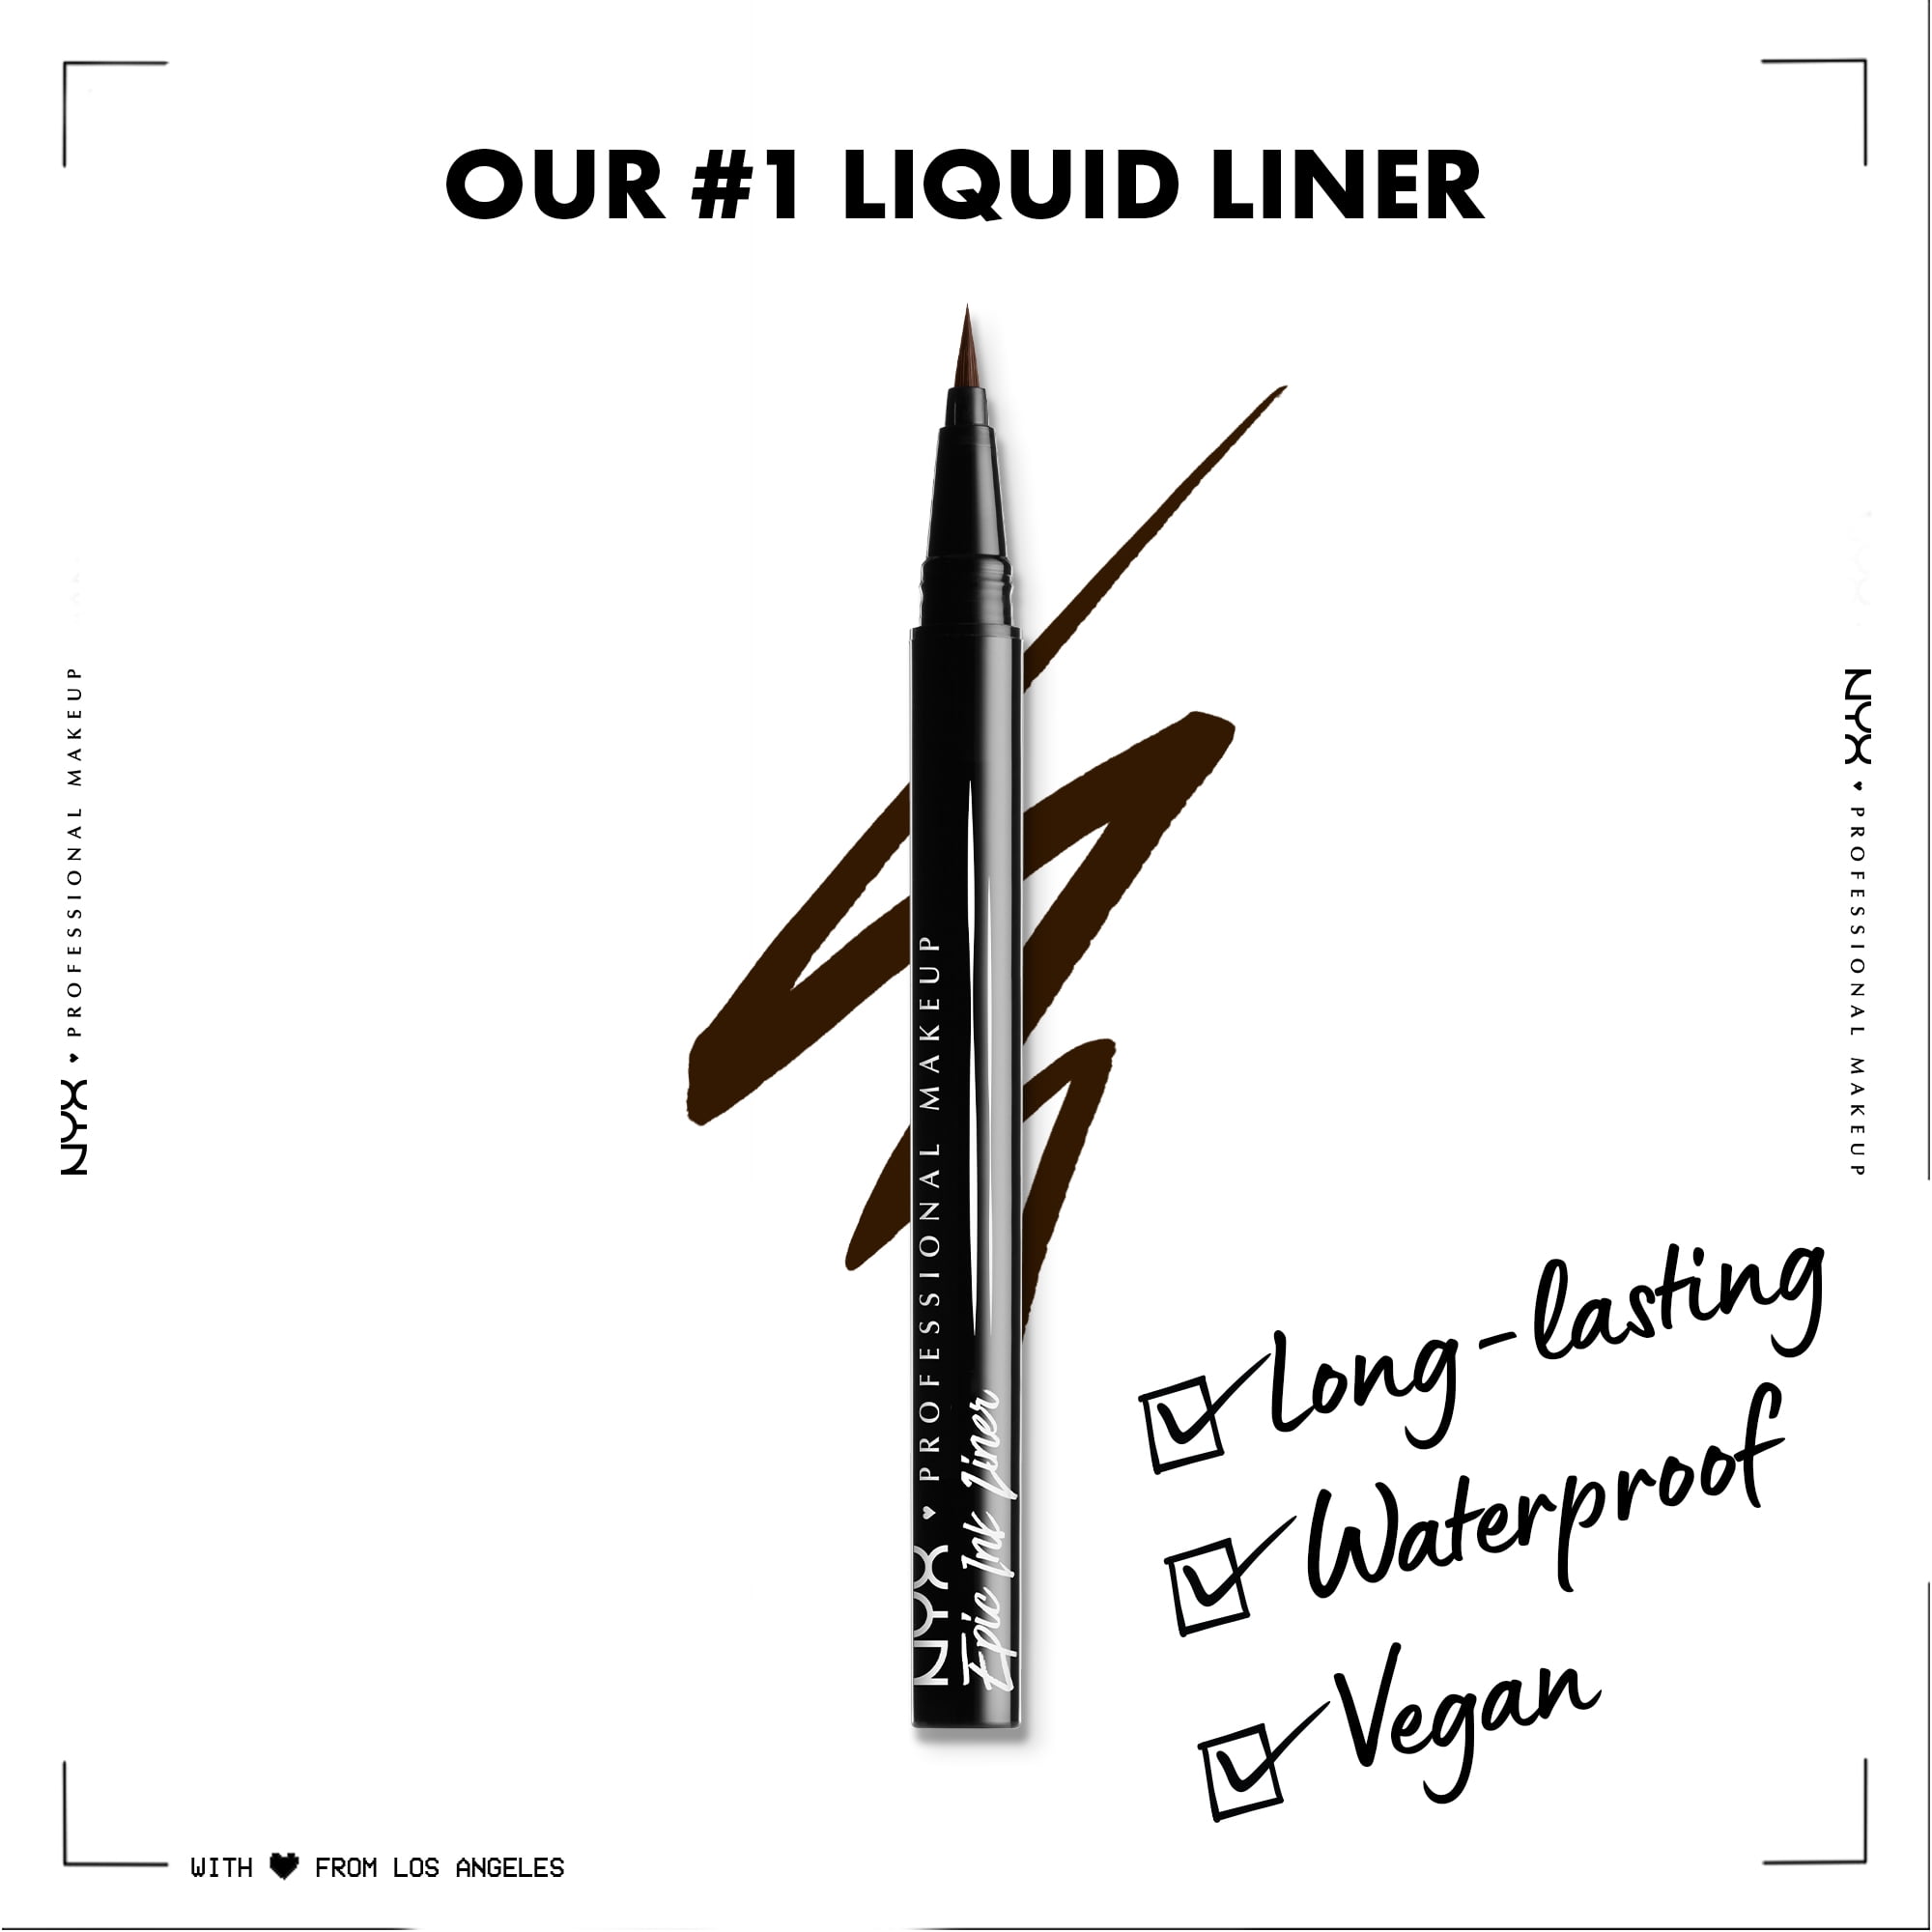 NYX Professional Liquid Makeup Waterproof oz Eyeliner, Vegan Ink 0.16 Black, Epic